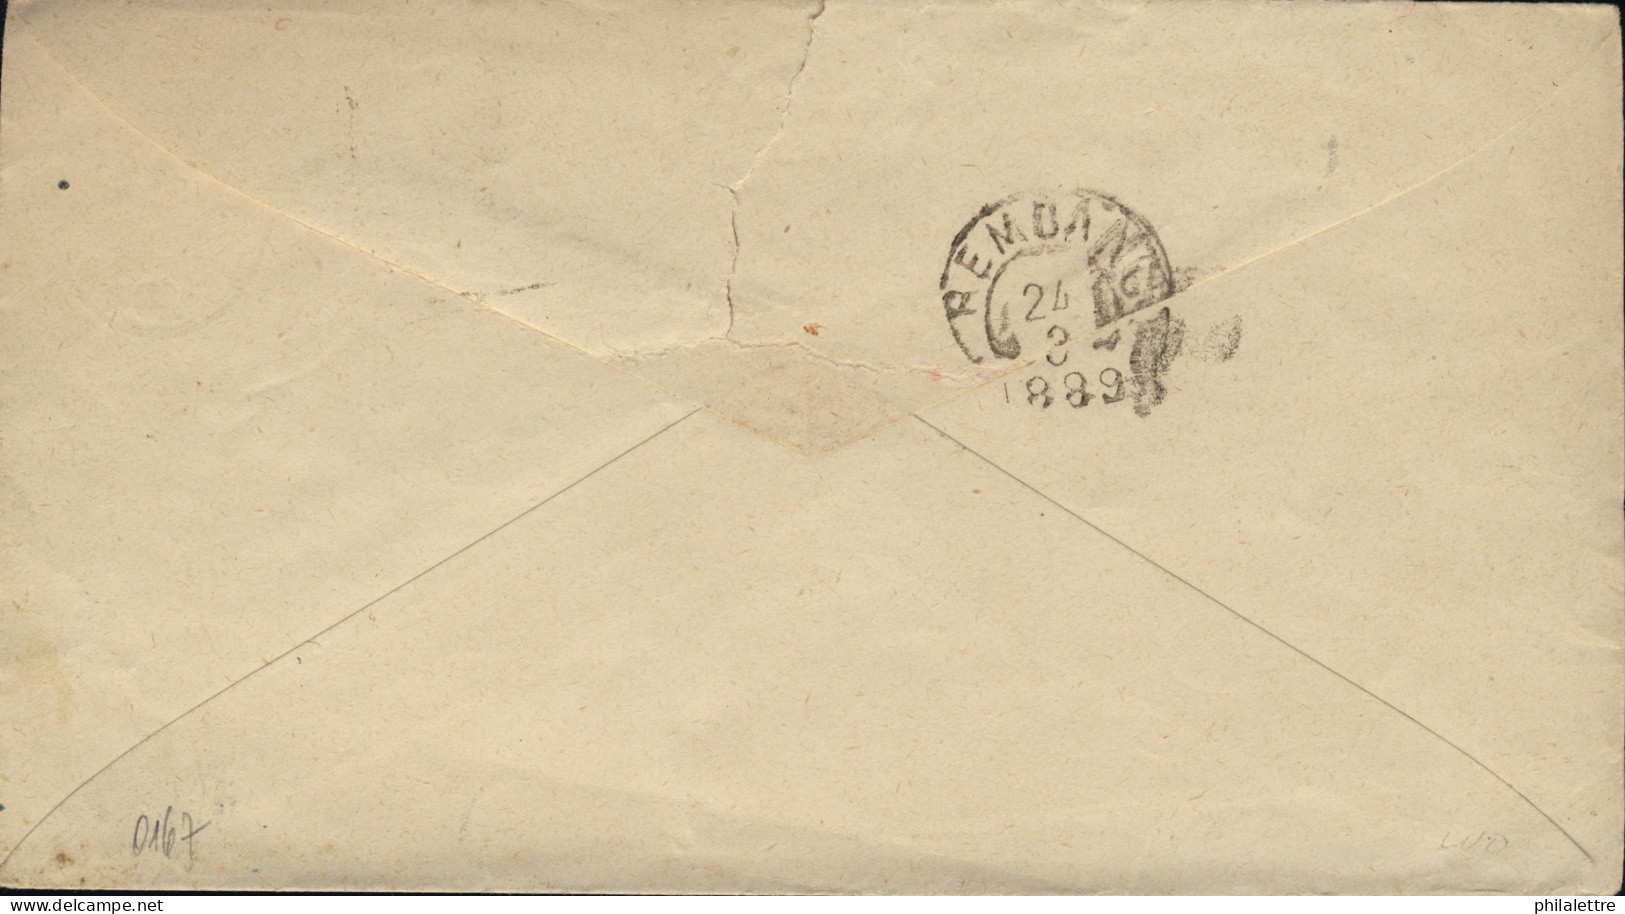 NED. INDIE / DUTCH INDIES / INDES NÉERLANDAISES - 1889 10c Postal Envelope Used From SEMARANG To REMBANG - Indie Olandesi